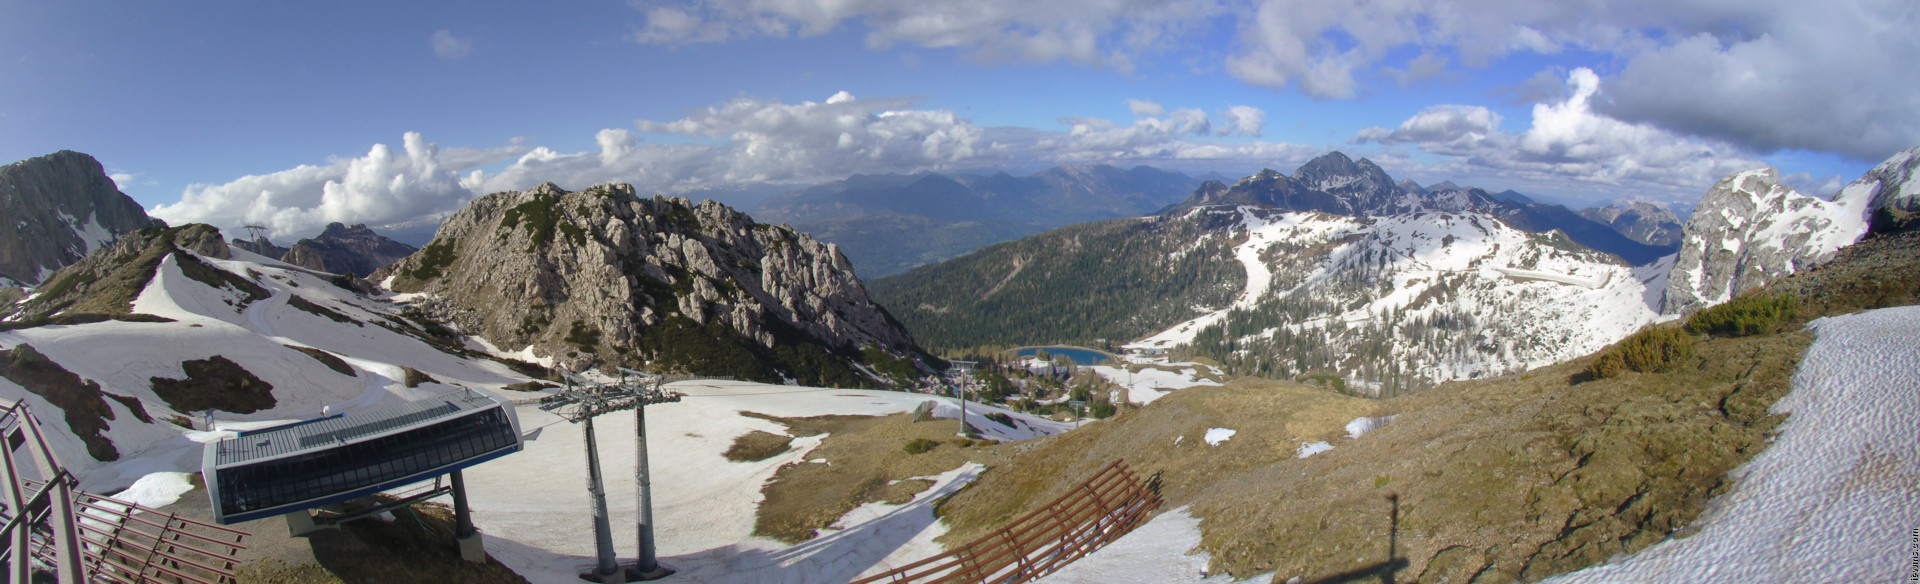 Nassfeld webcam - Rudnigsattel ski station 1.980 m